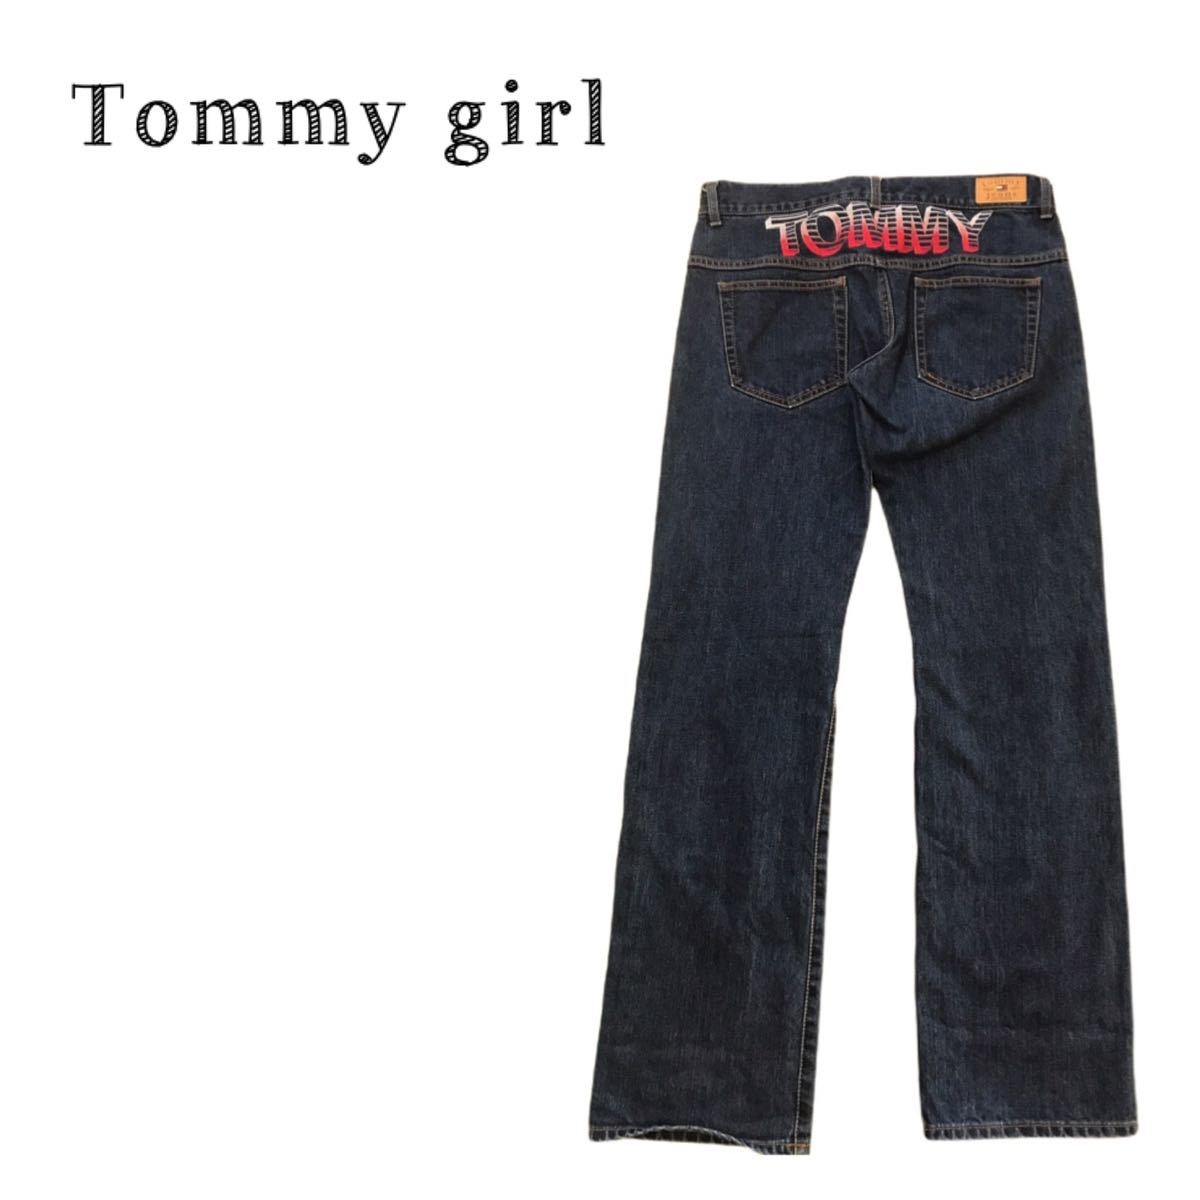 送料無料 Tommy girl デニム ジーンズ 選択 大人気 バックプリント トミーガール Sサイズ レディース 海外輸入